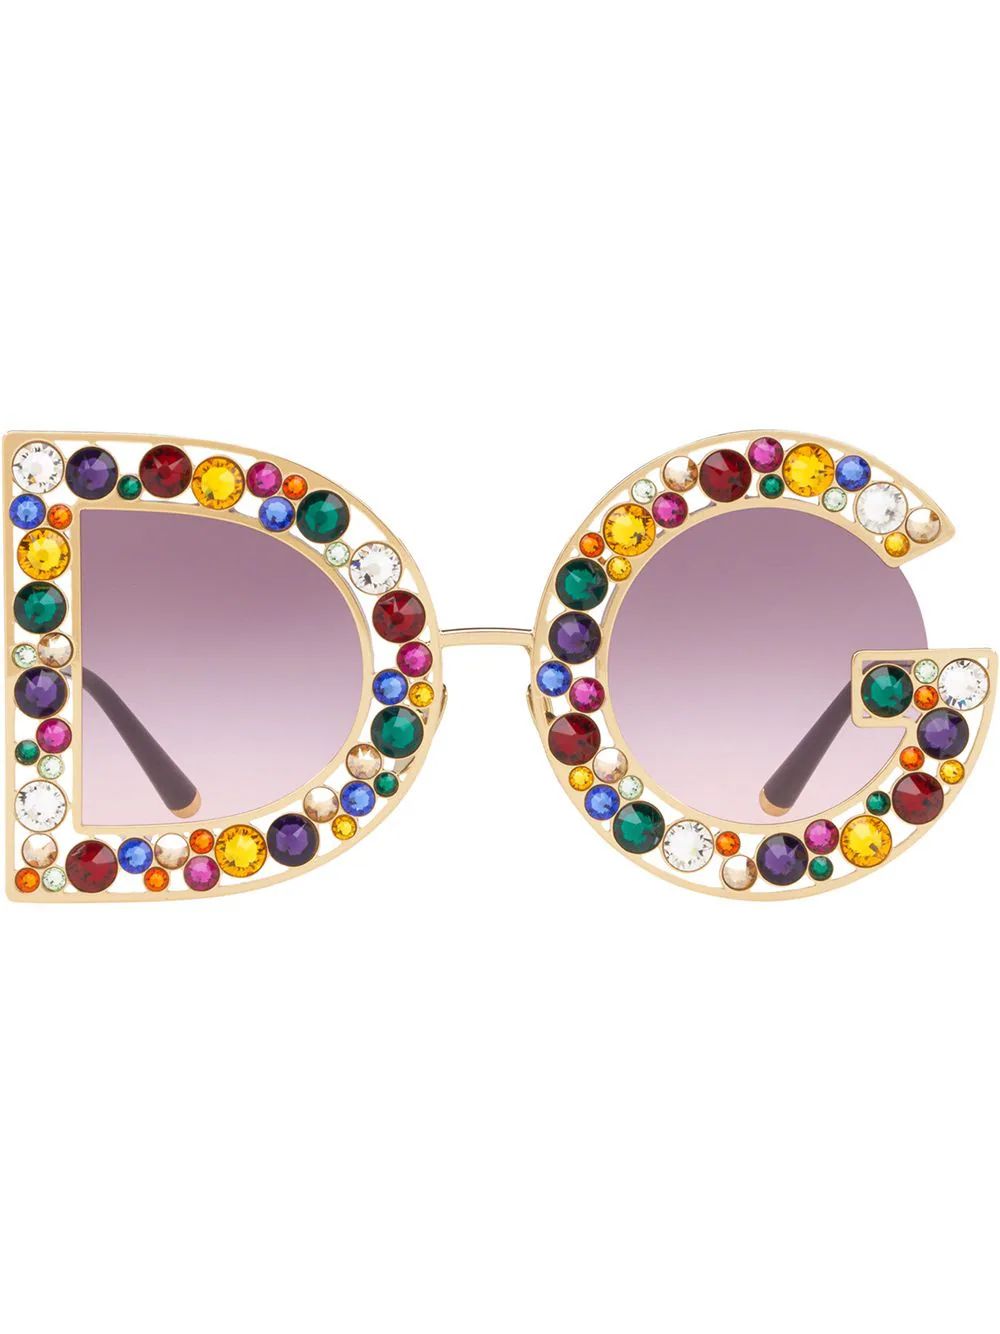 Dolce & Gabbana Eyewear DG Crystal Embellished Sunglasses - Farfetch | Farfetch Global